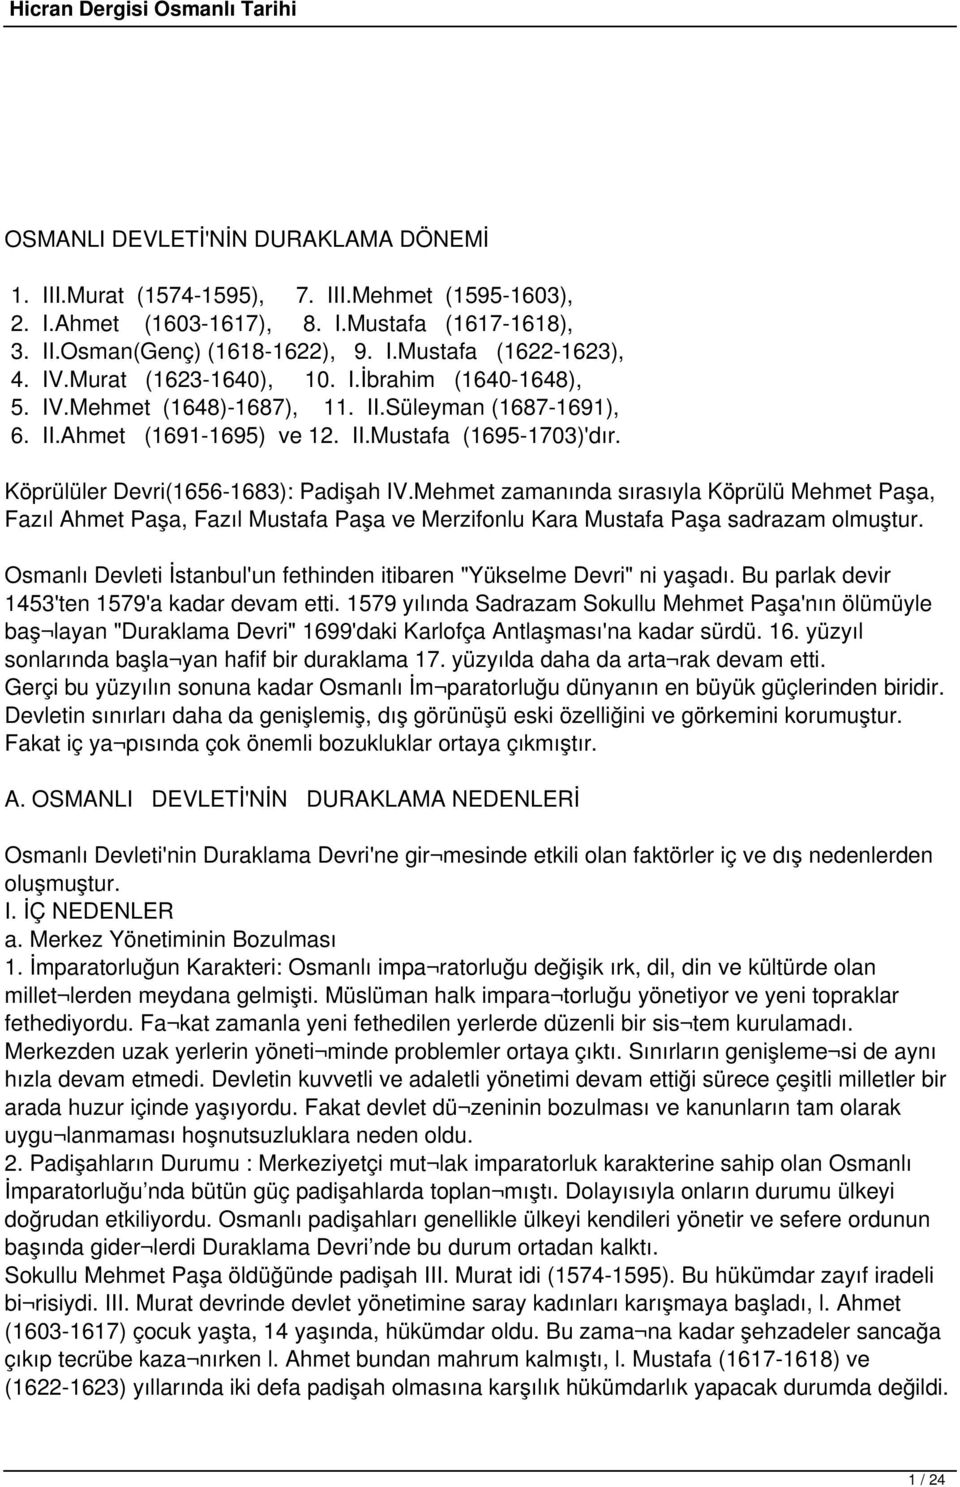 Köprülüler Devri(1656-1683): Padişah IV.Mehmet zamanında sırasıyla Köprülü Mehmet Paşa, Fazıl Ahmet Paşa, Fazıl Mustafa Paşa ve Merzifonlu Kara Mustafa Paşa sadrazam olmuştur.